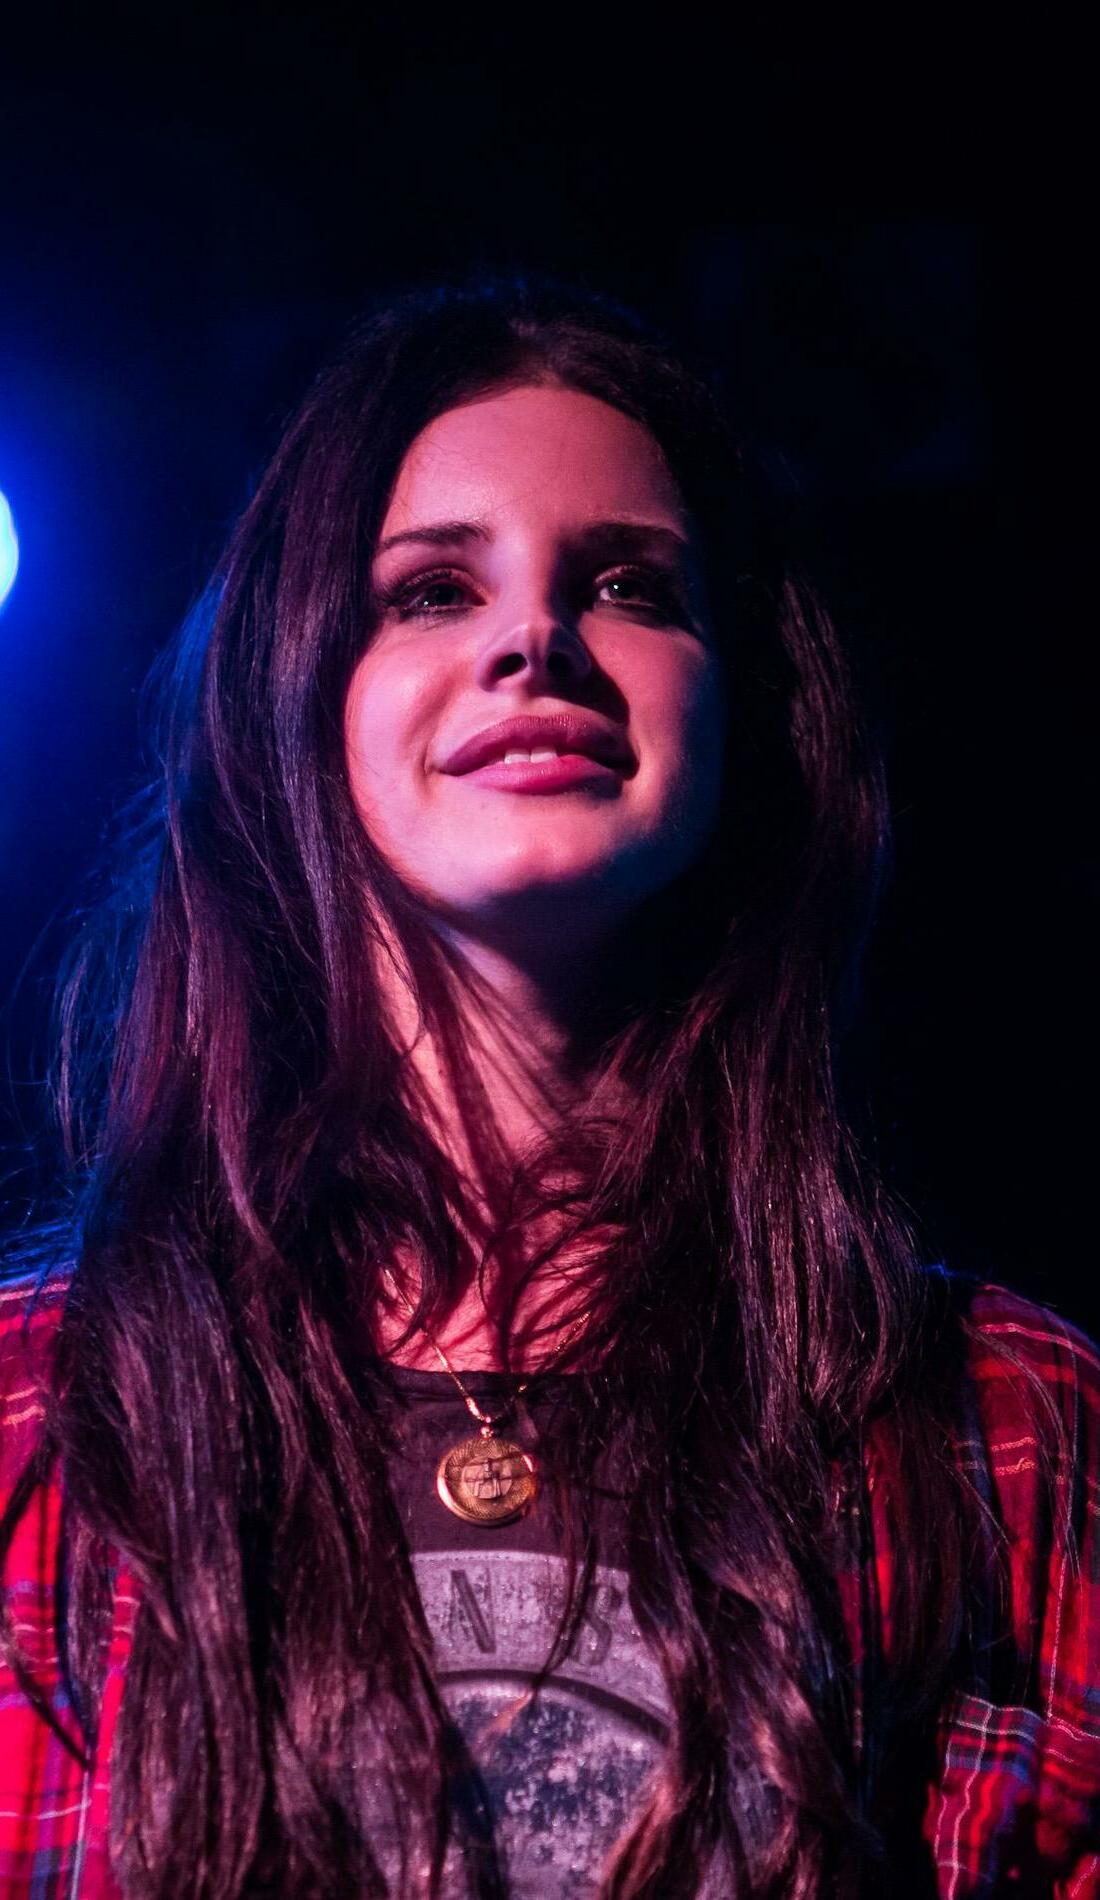 A Lana Del Rey live event